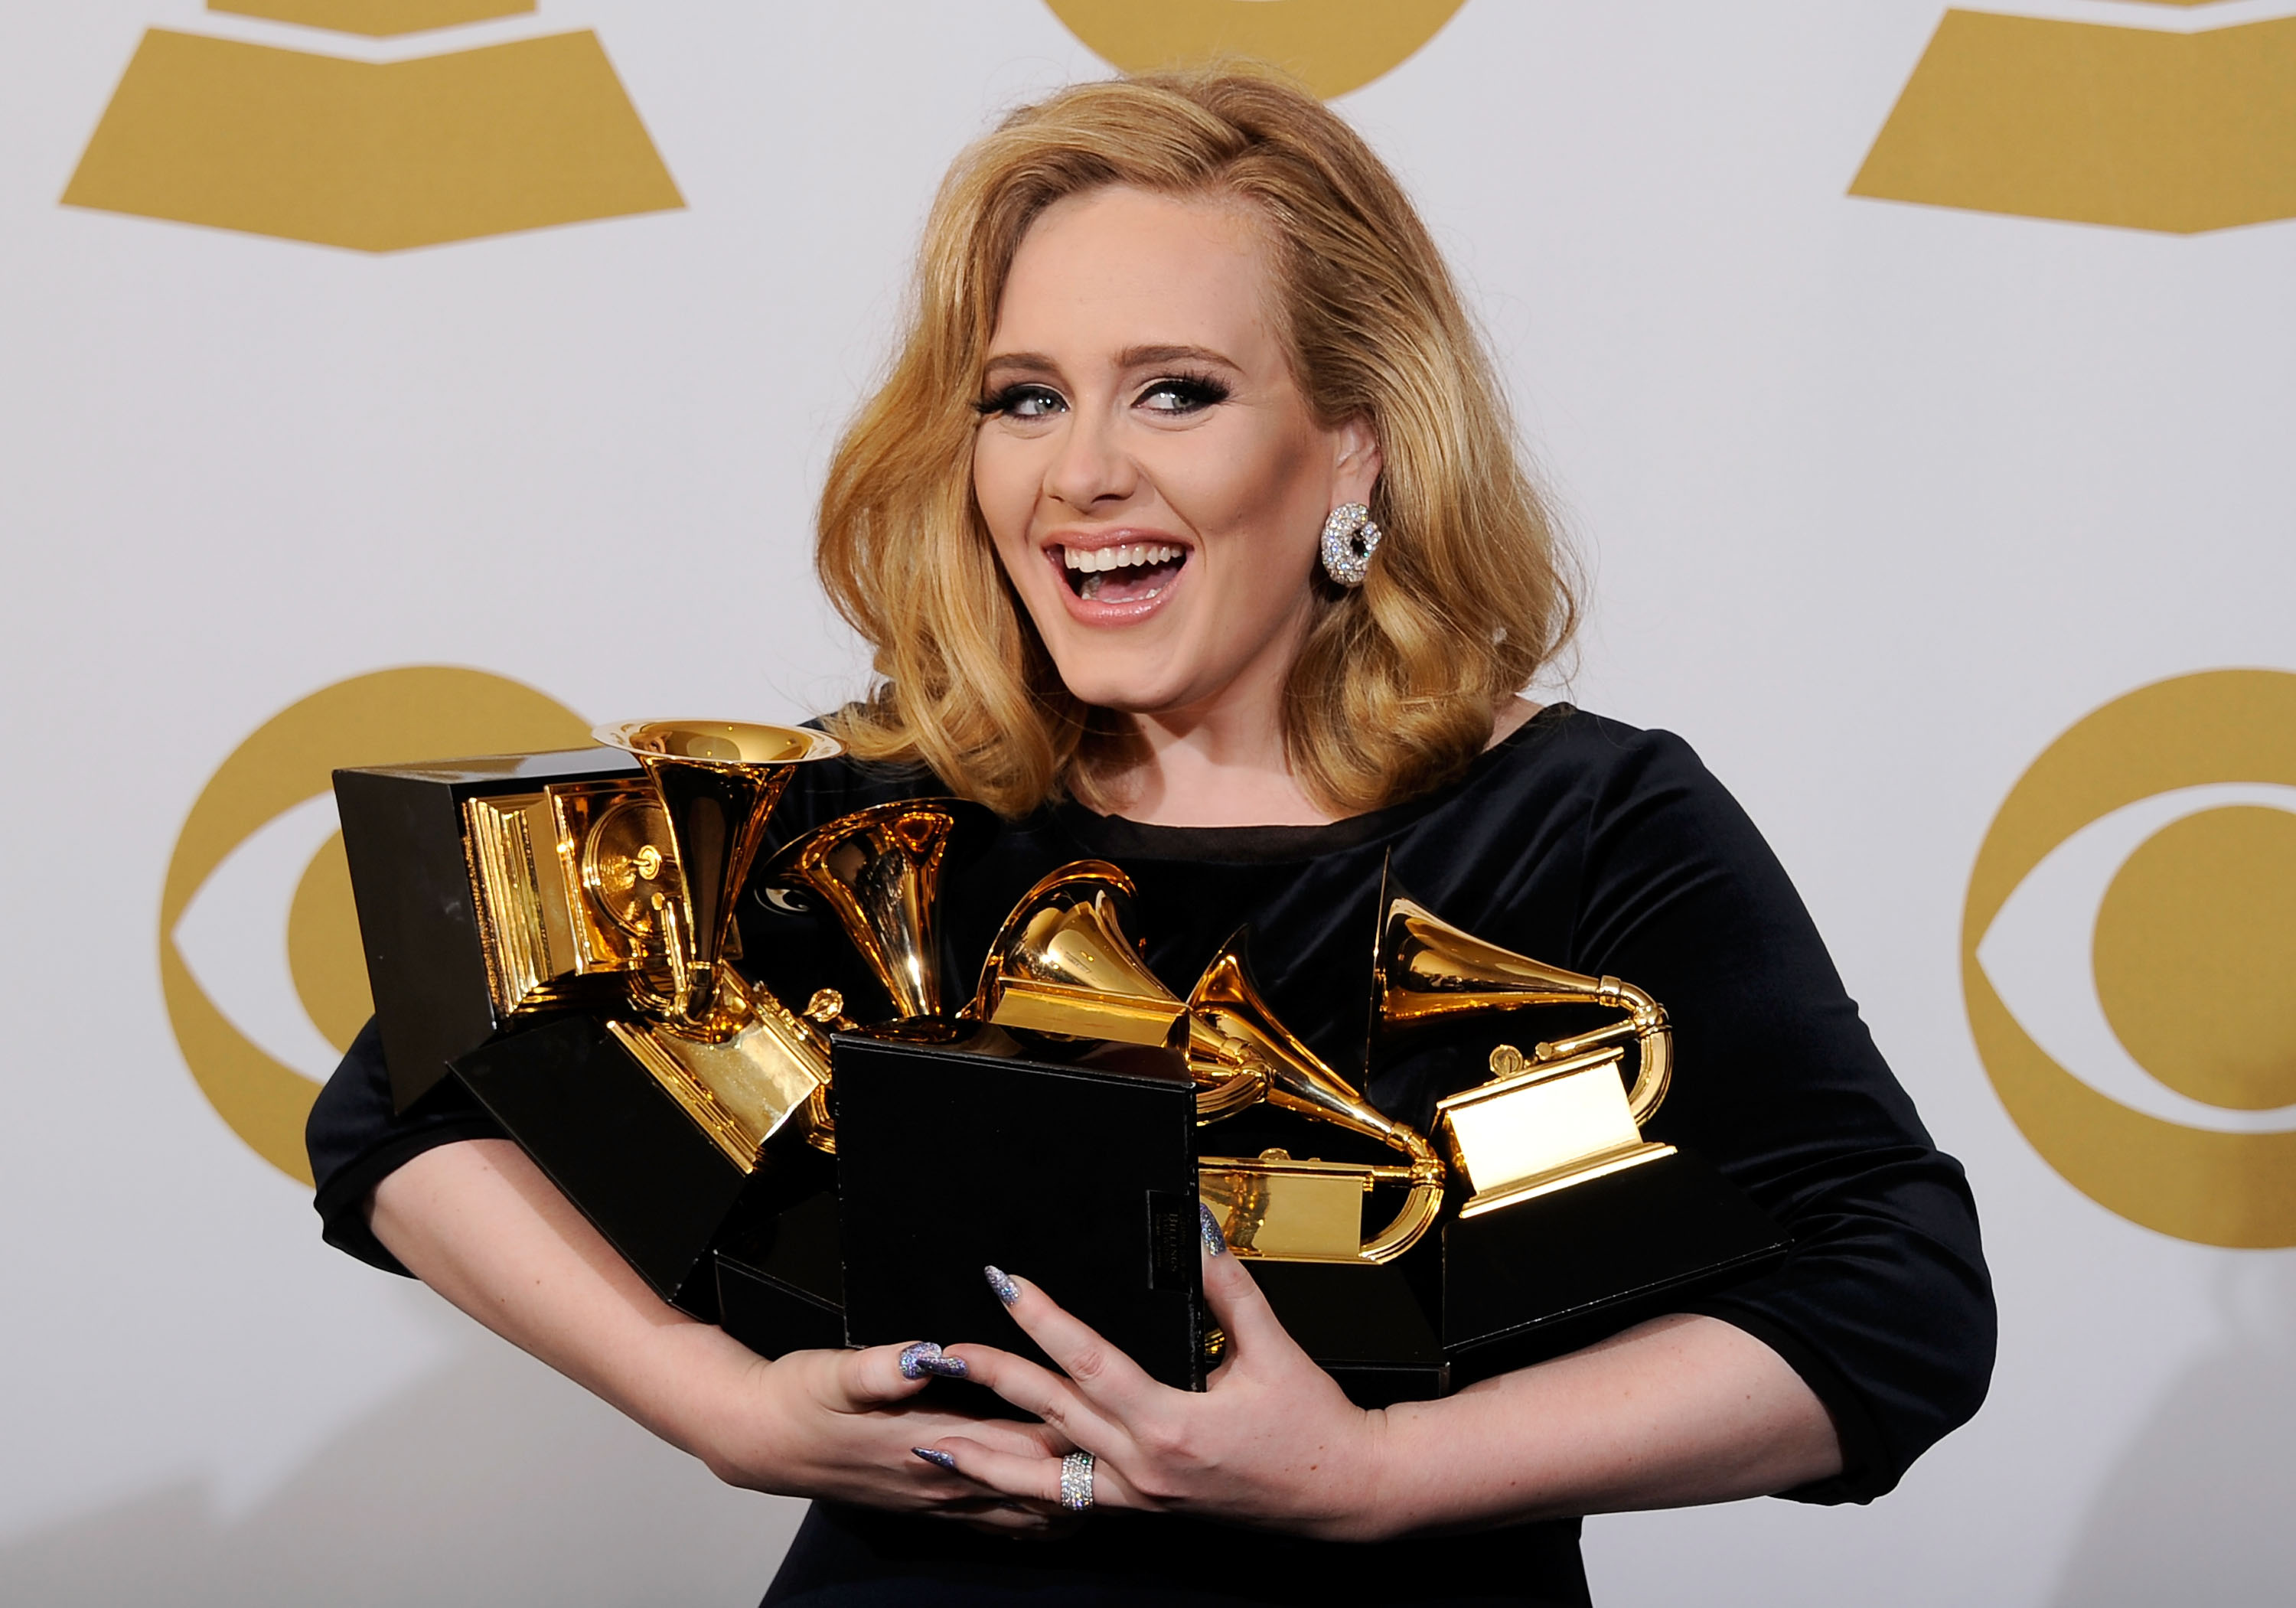 Sängerin Adele, Gewinnerin des Grammys für die Platte des Jahres, posiert im Presseraum bei der 54. jährlichen Grammy-Verleihung im Staples Center am 12. Februar 2012 in Los Angeles, Kalifornien. | Quelle: Getty Images